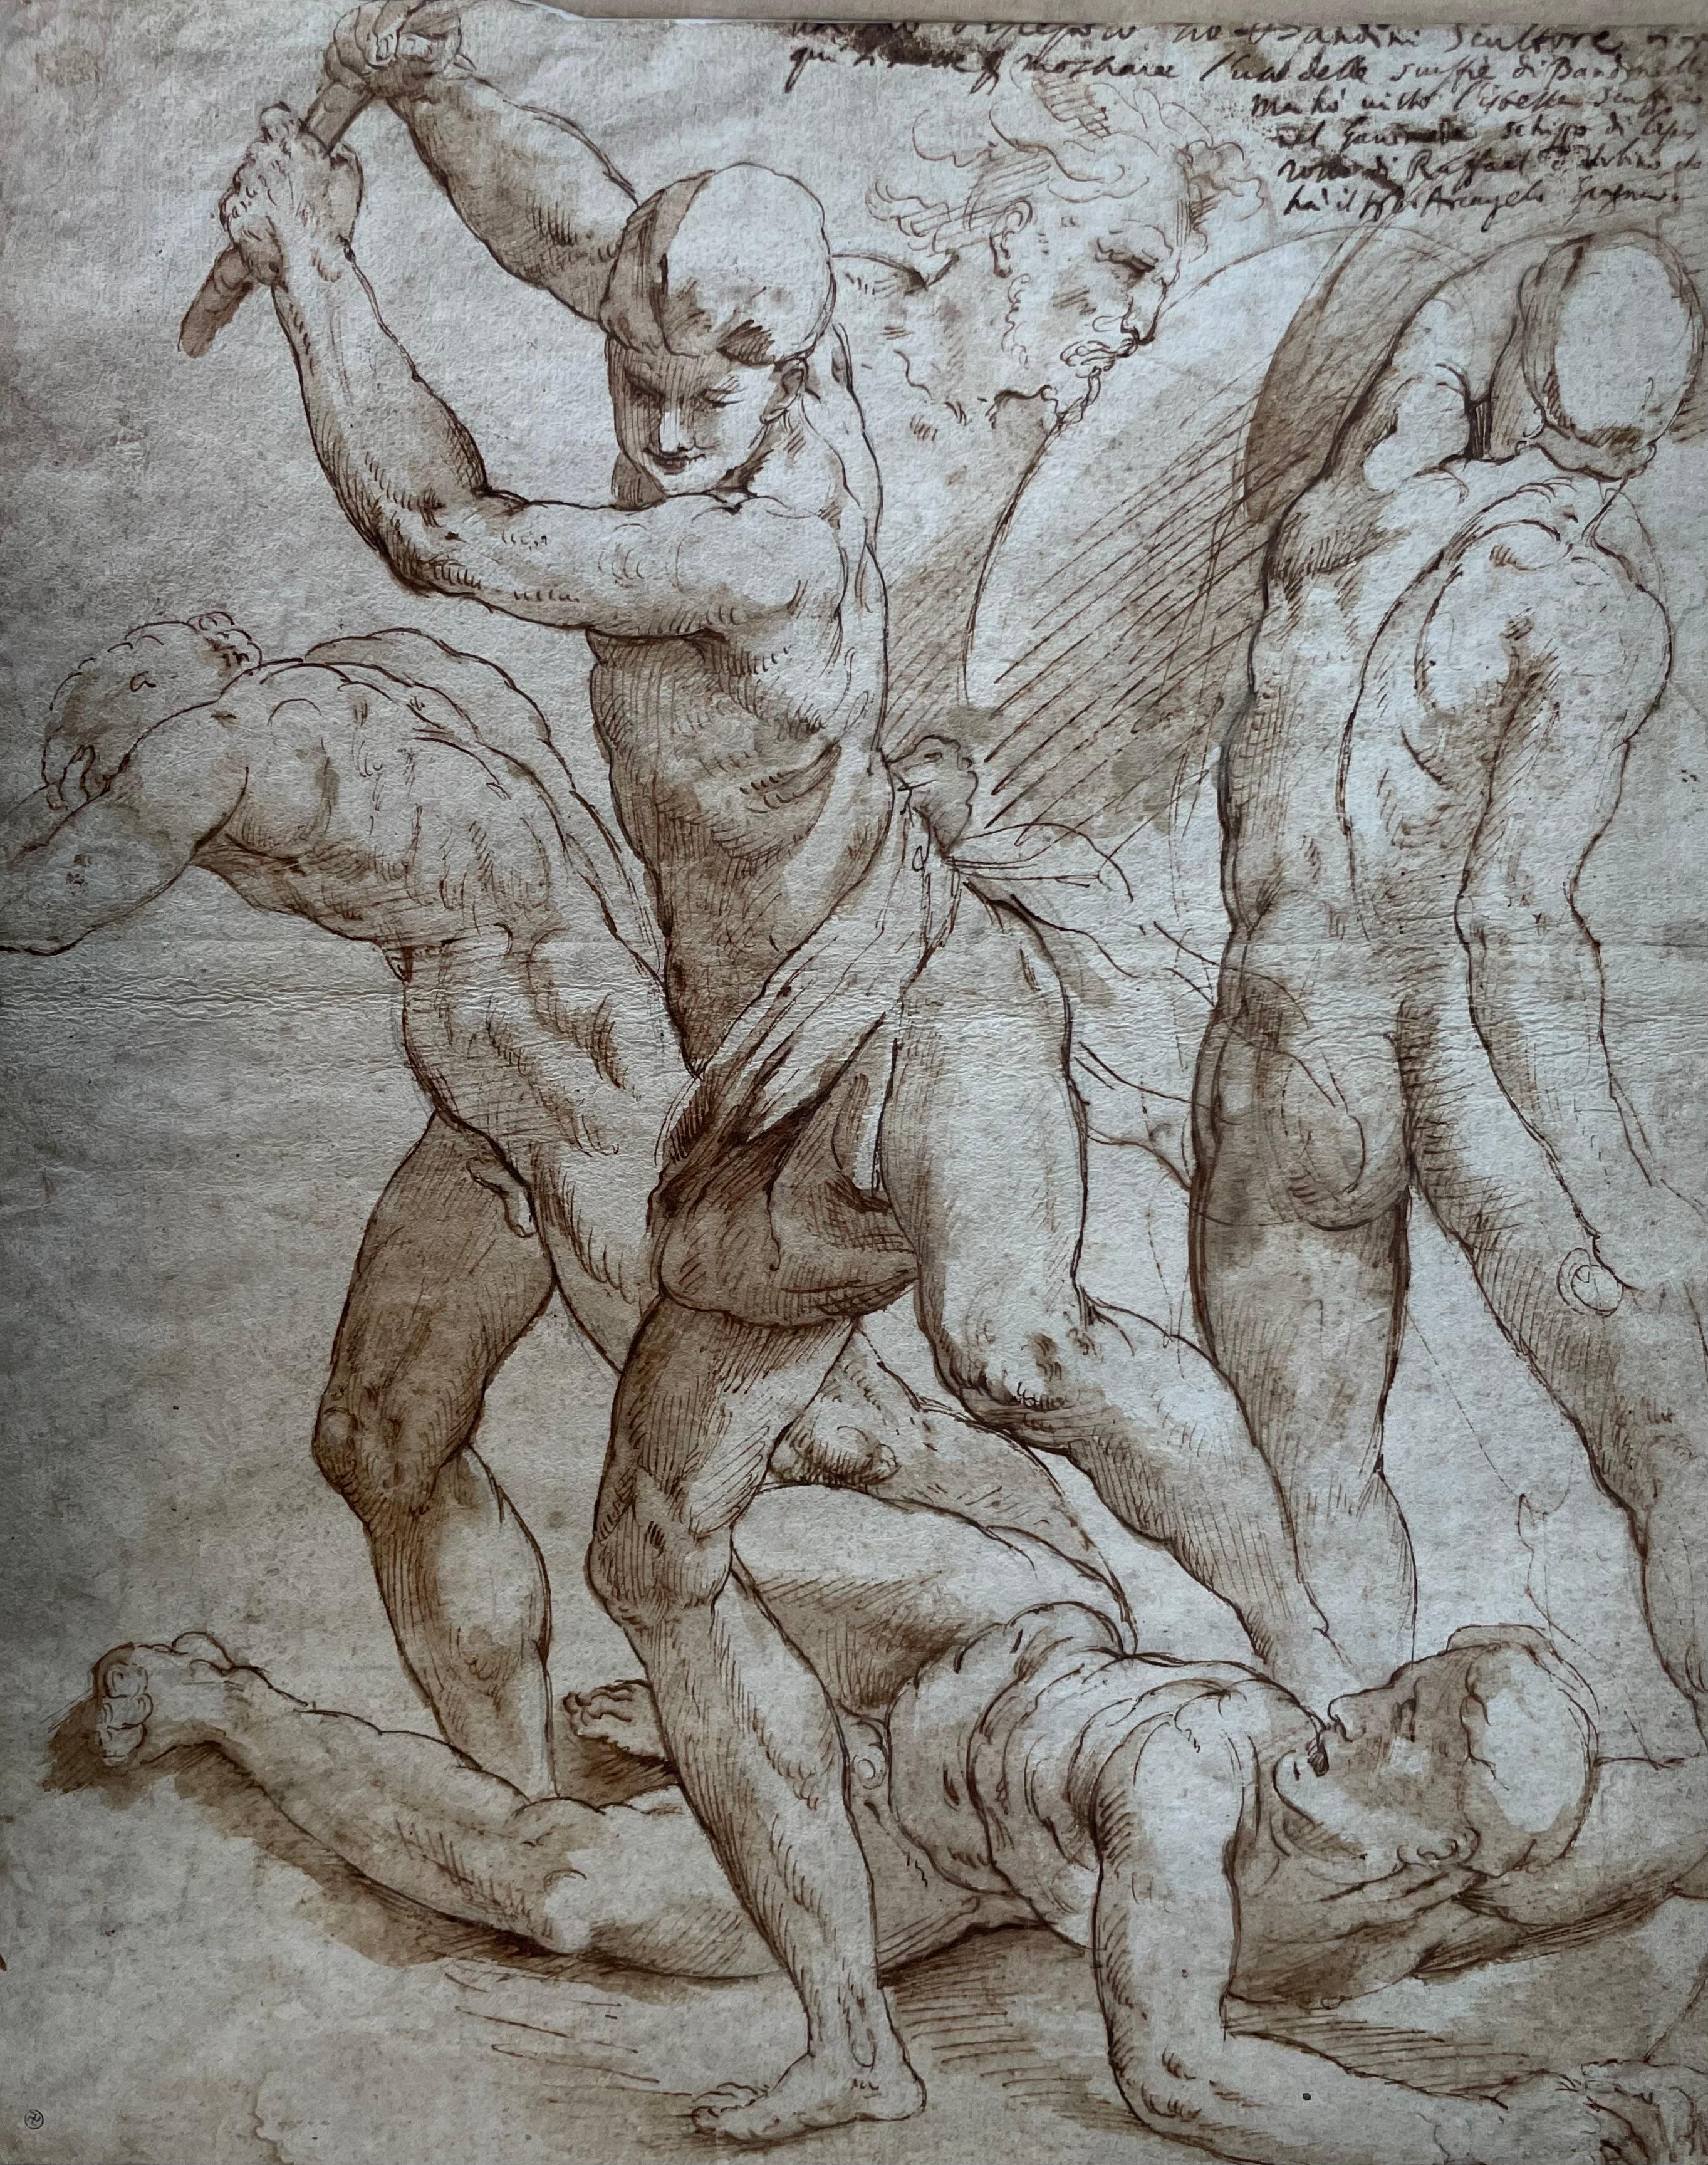 Jacopo Zanguidi Dit Bertoja (1544 - 1574) - Important dessin du 16ème siècle - Art de Jacopo Zanguidi BERTOJA